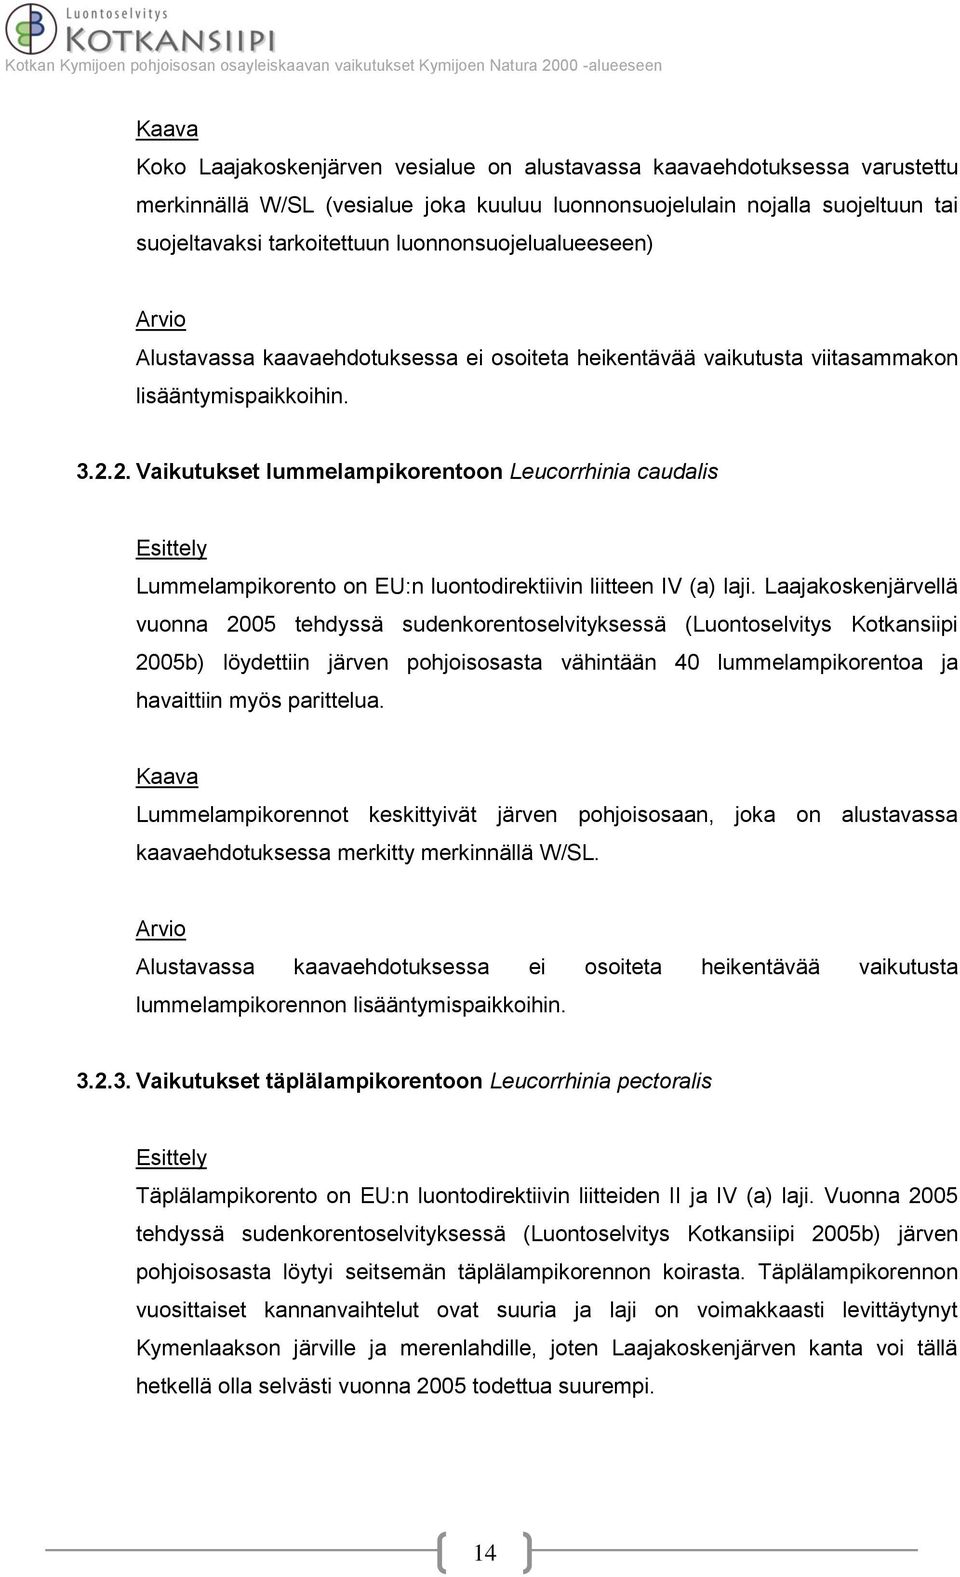 2. Vaikutukset lummelampikorentoon Leucorrhinia caudalis Lummelampikorento on EU:n luontodirektiivin liitteen IV (a) laji.